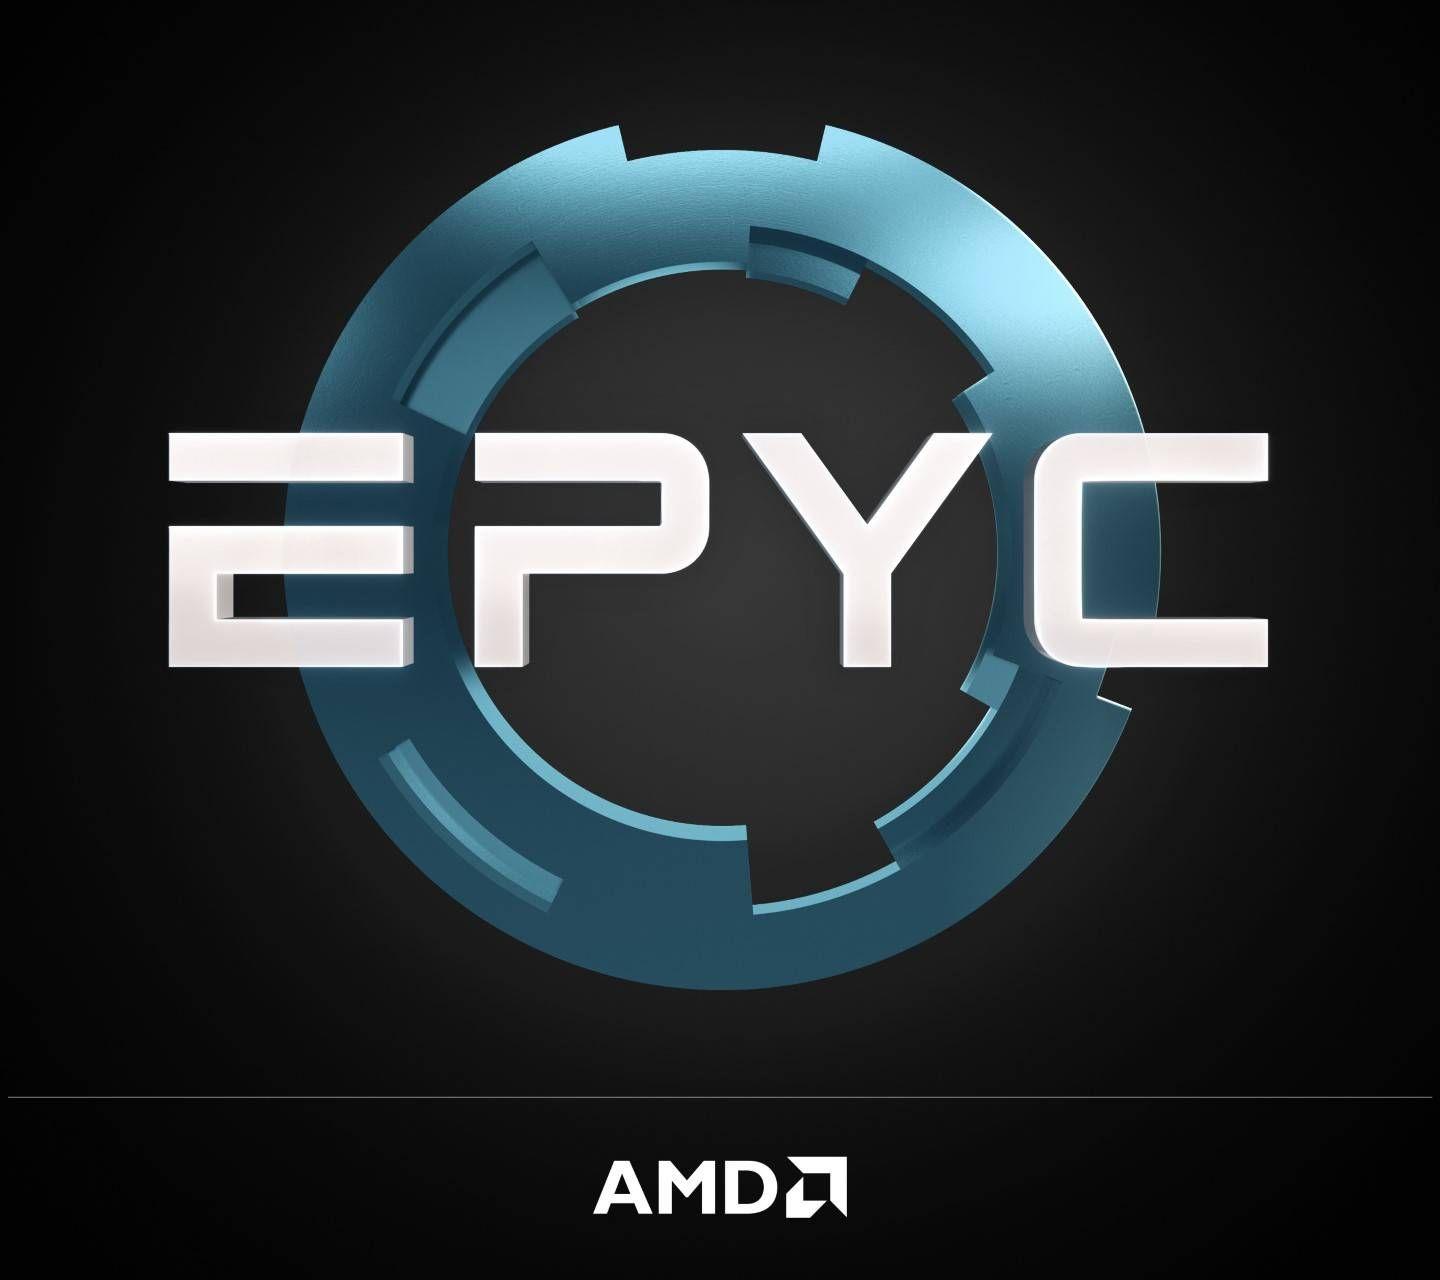 AMD Epyc Logo - AMD EPYC Logo Wallpaper by Dahaka23 - 06 - Free on ZEDGE™